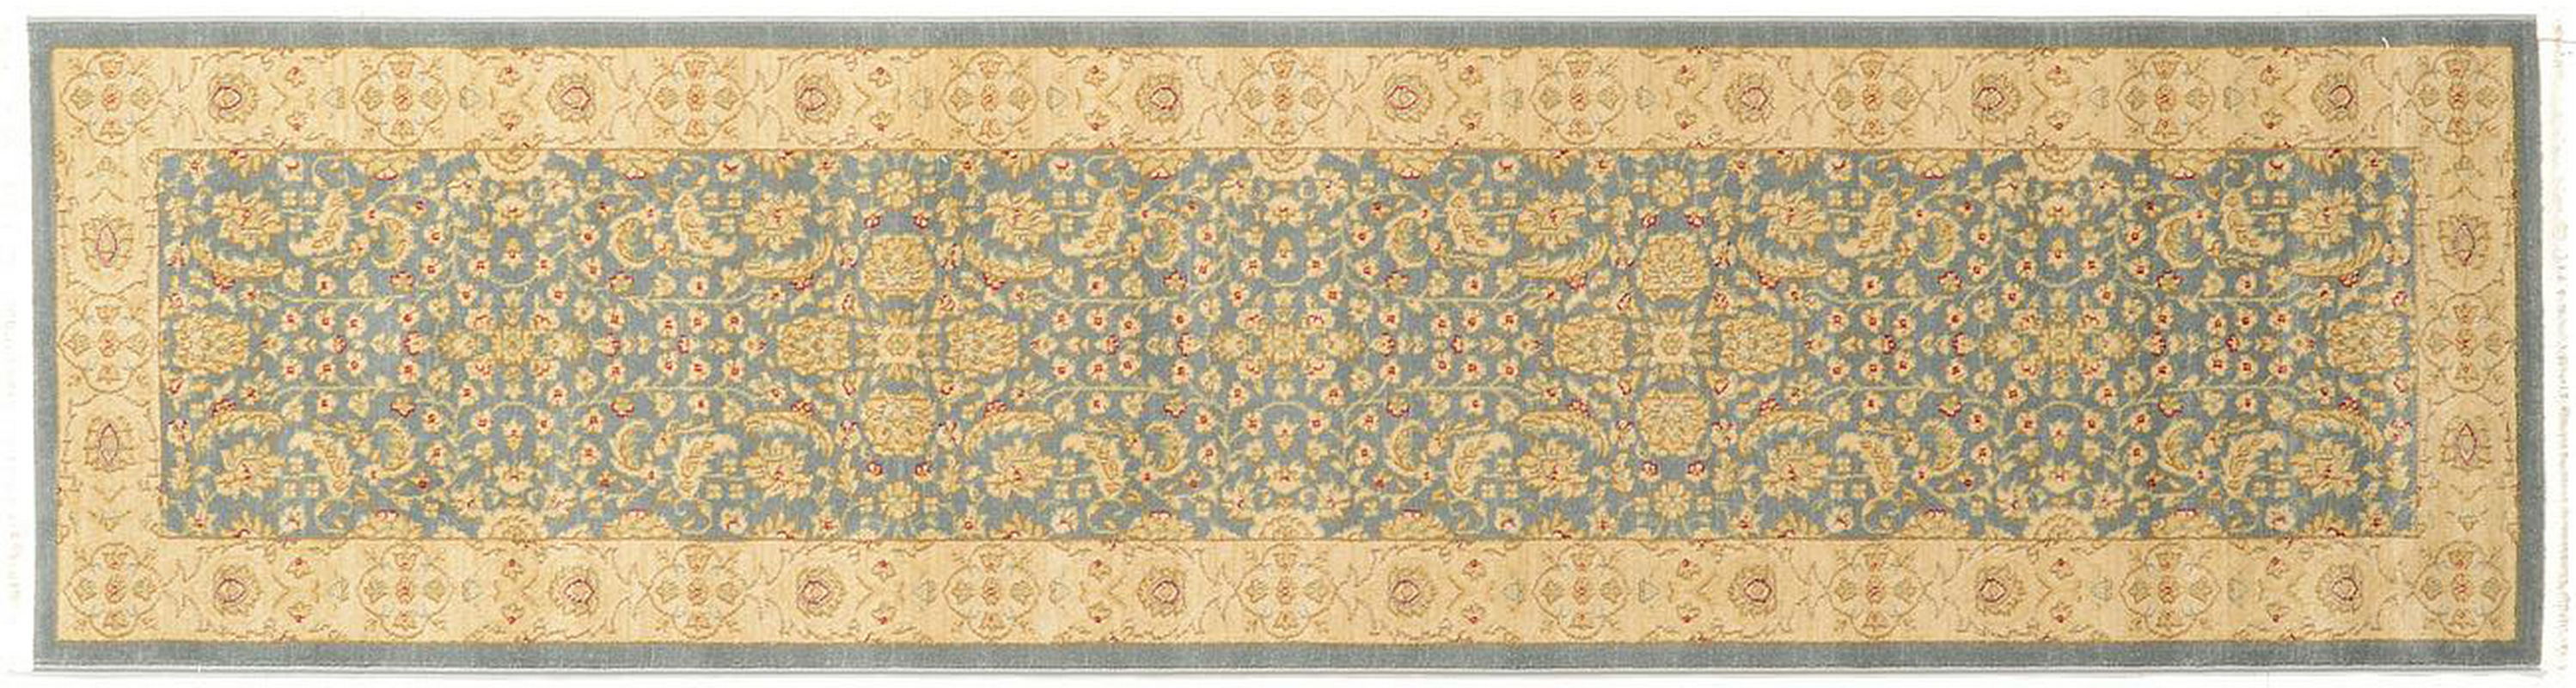 古典经典地毯ID9725